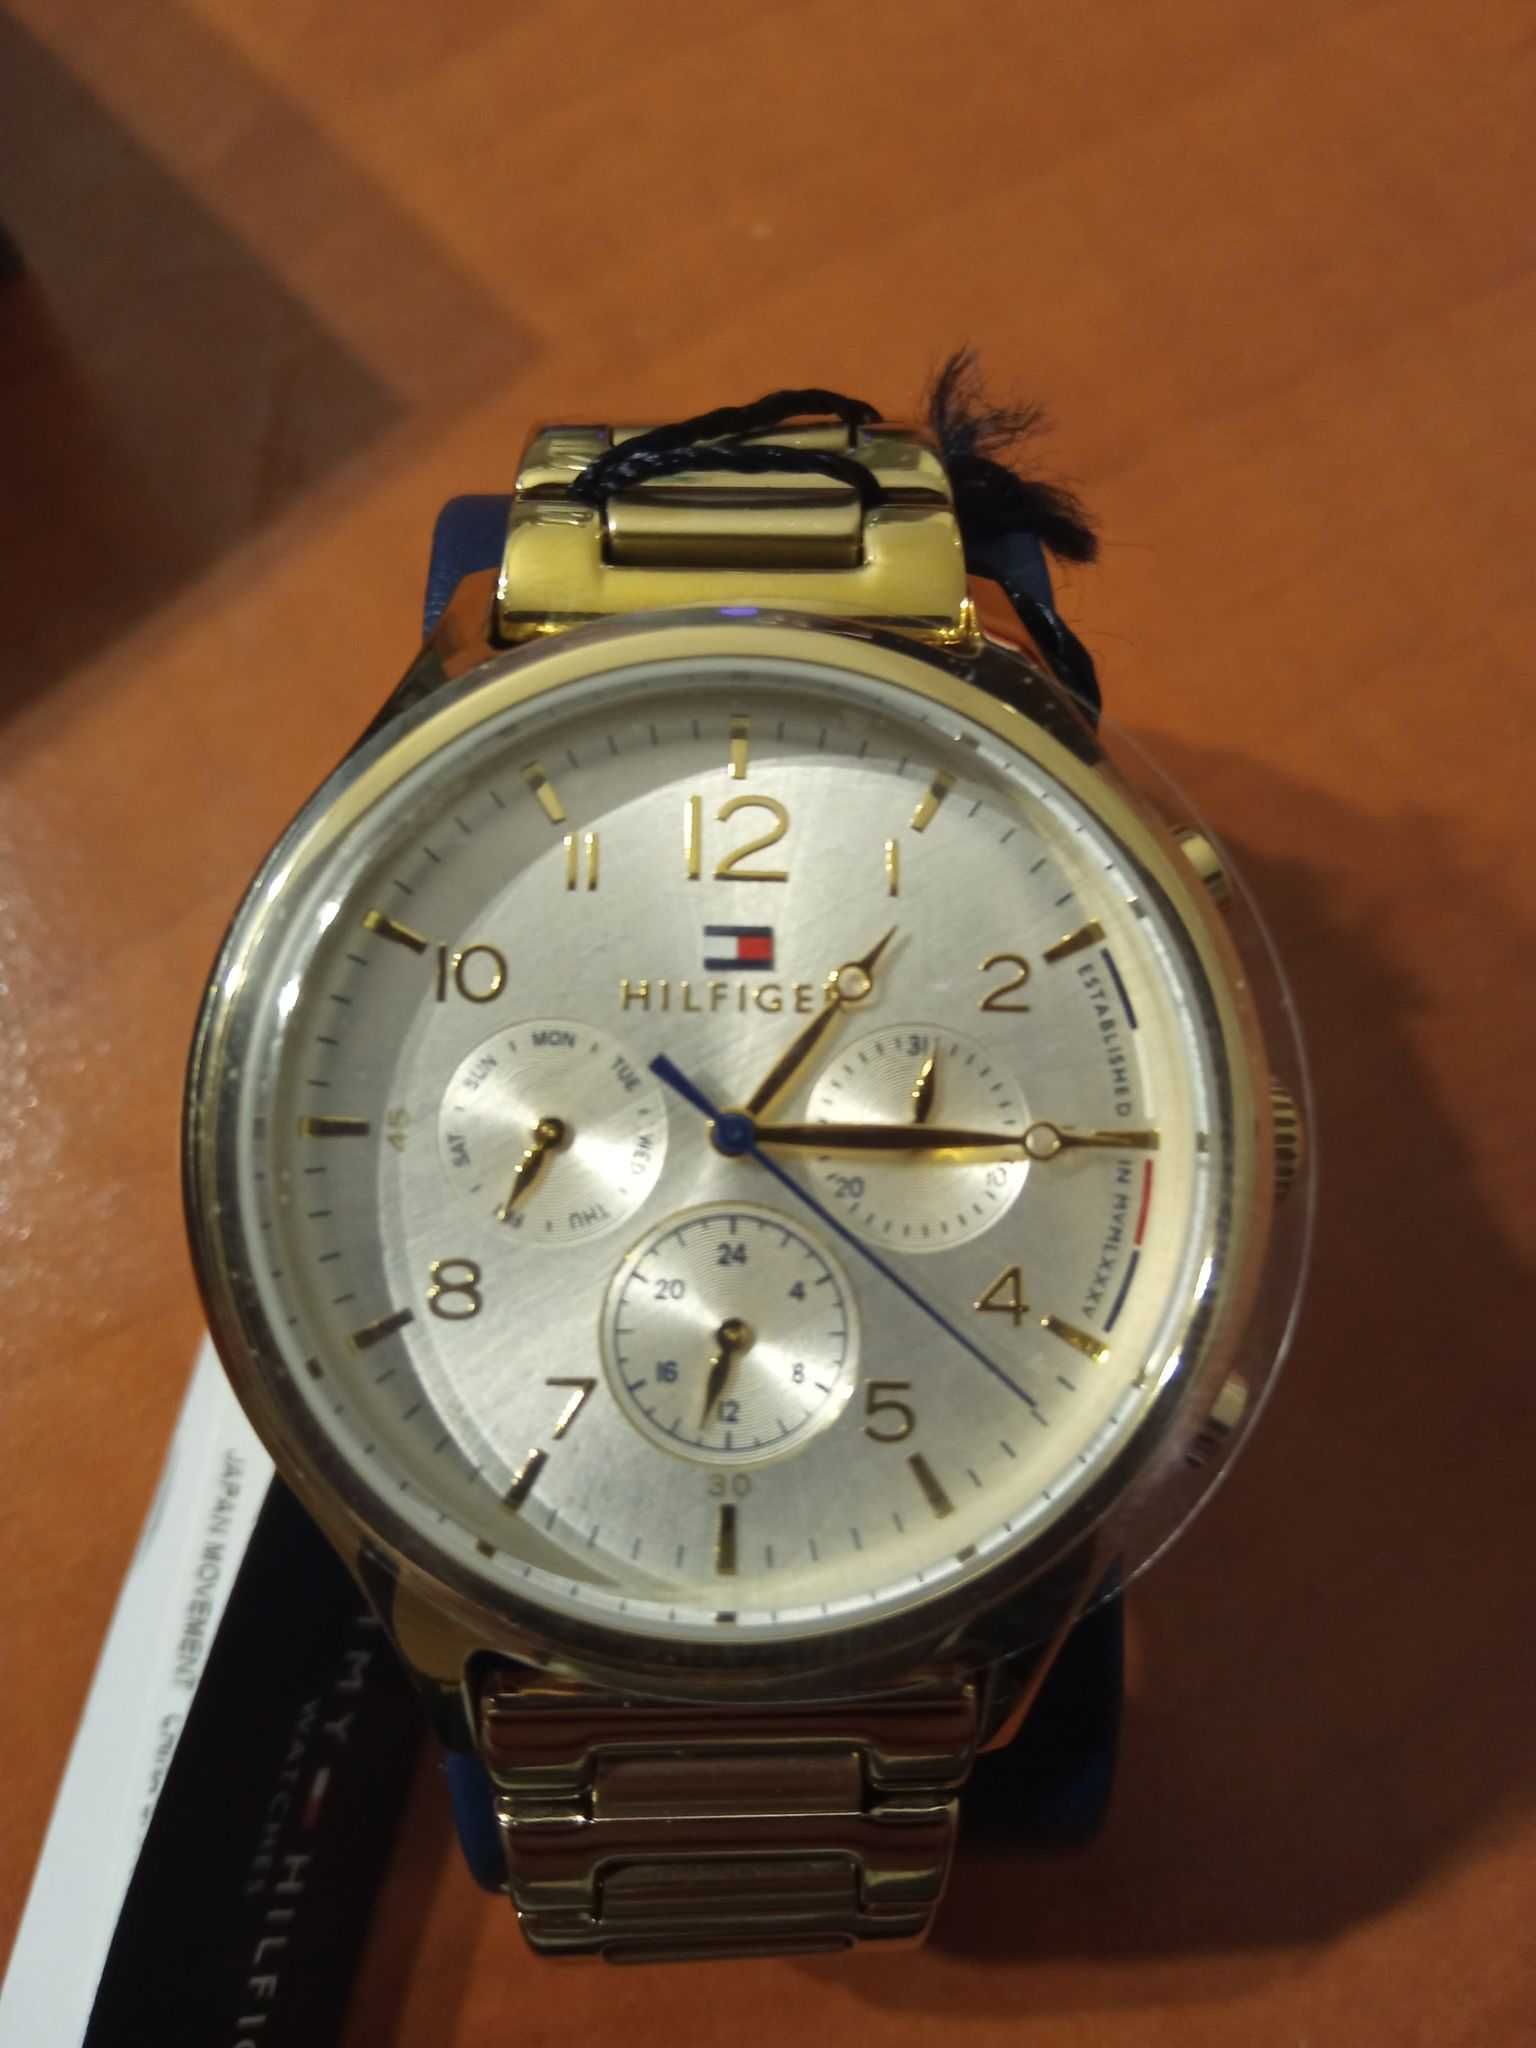 TOMMY HILFIGER złoty zegarek unisex 400 złotych!